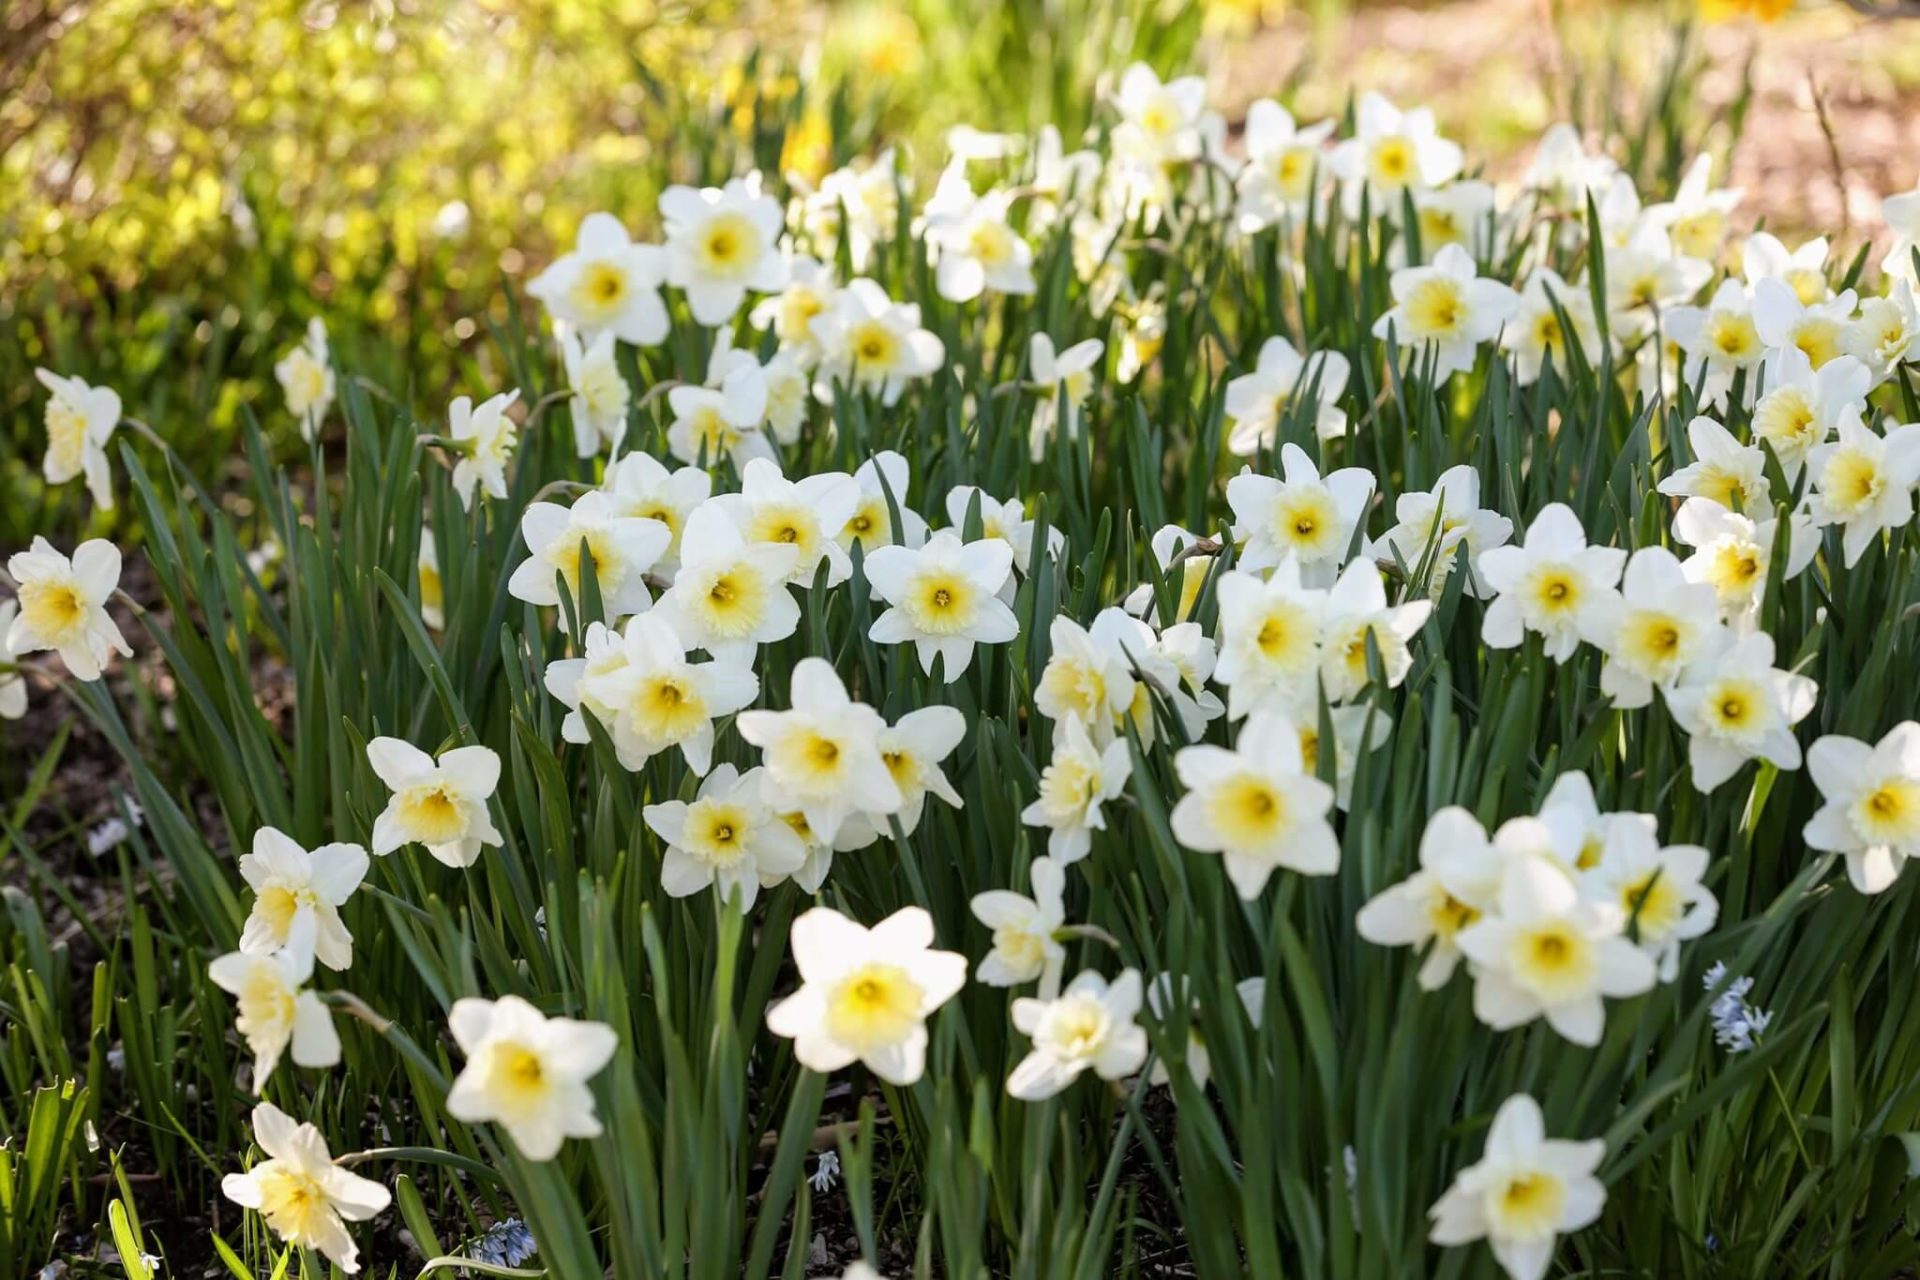 Dozens of white daffodils in a sunny field